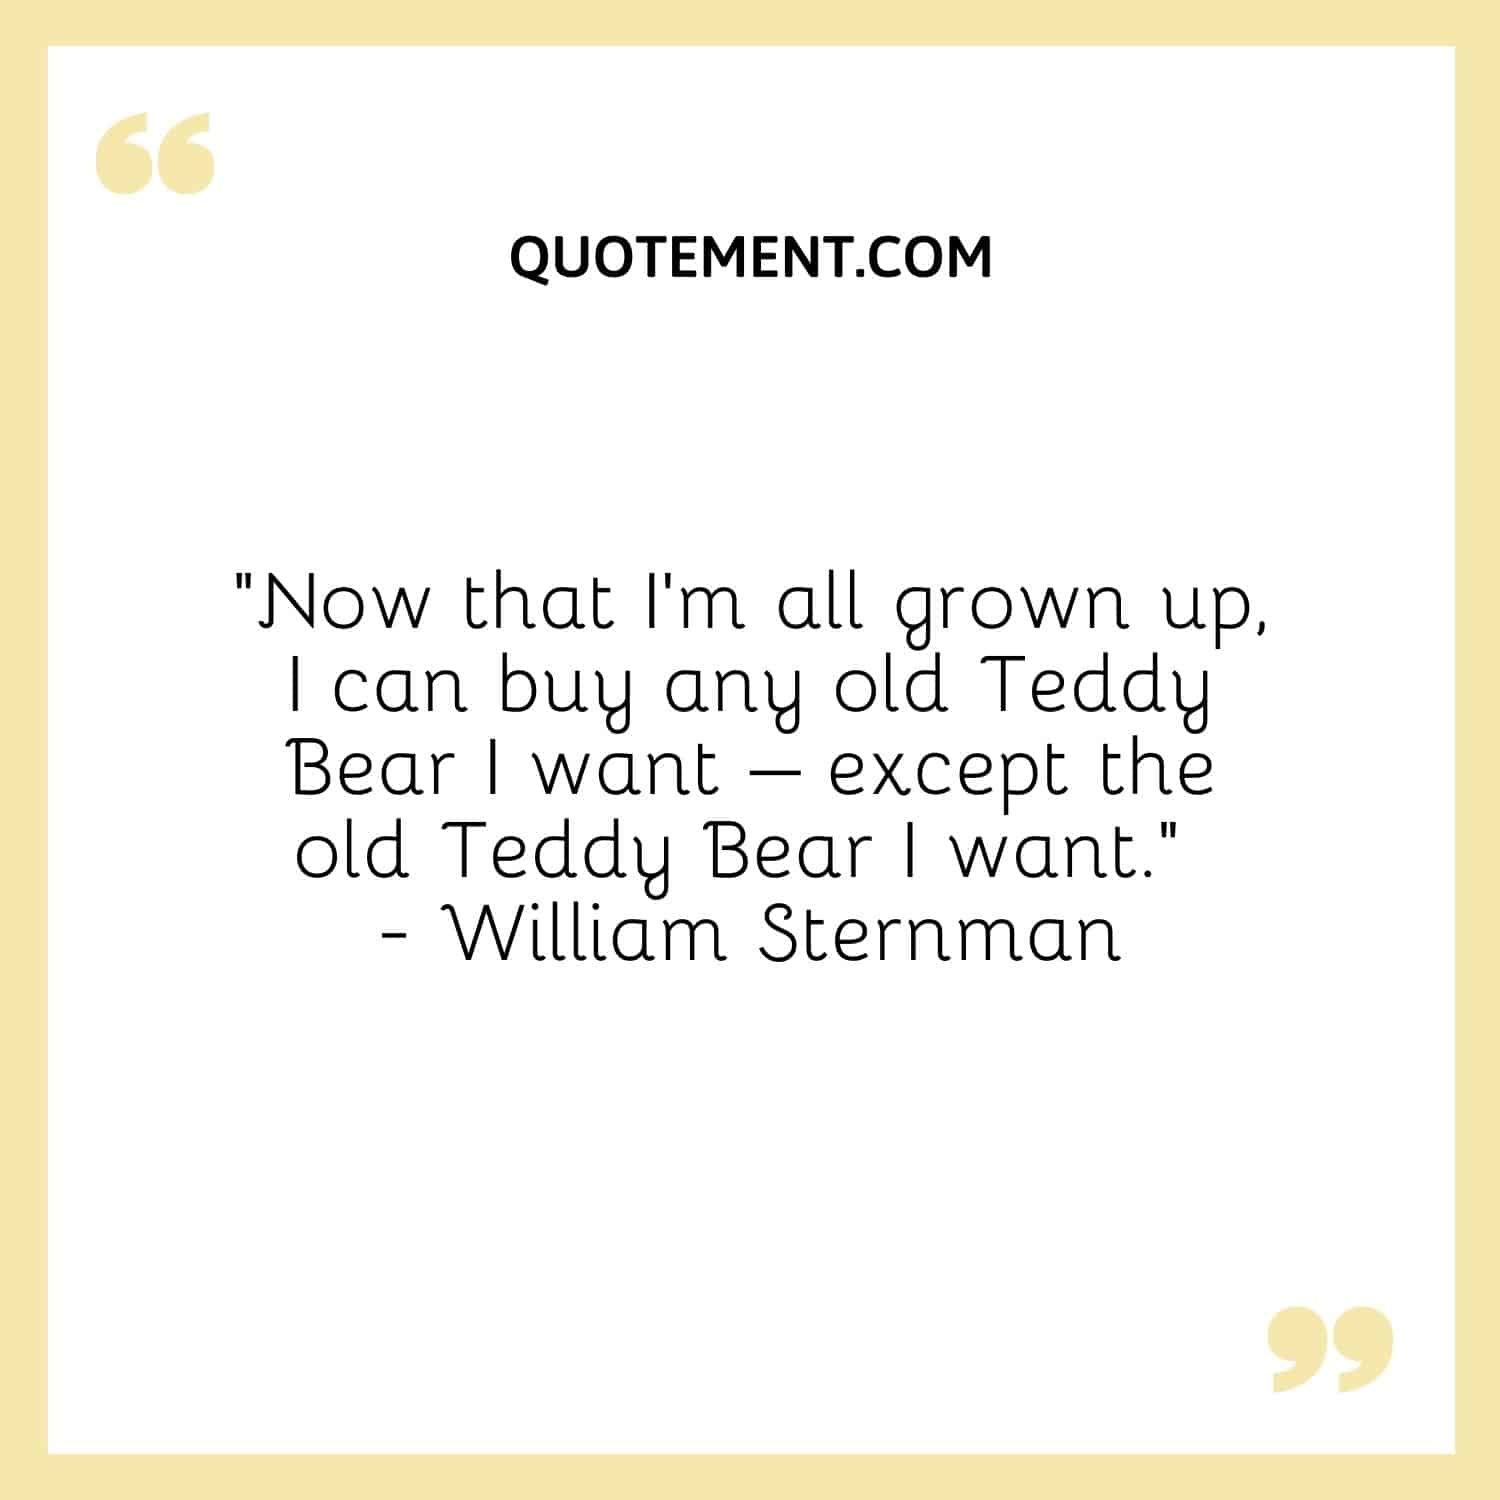 I can buy any old Teddy Bear I want